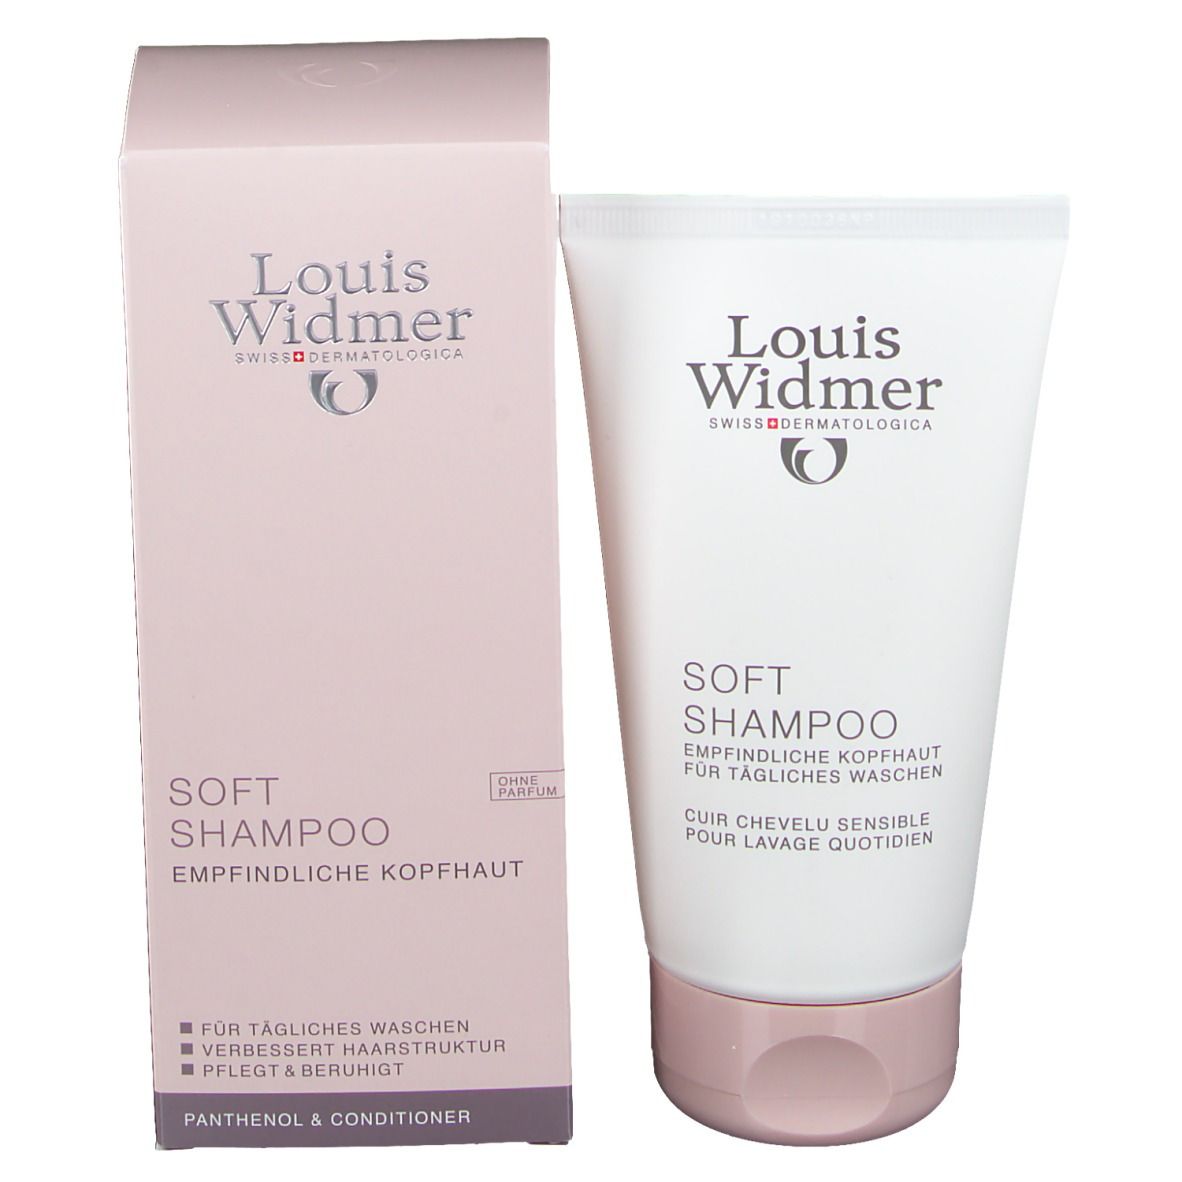 Louis Widmer Soft-Shampoo unparfümiert